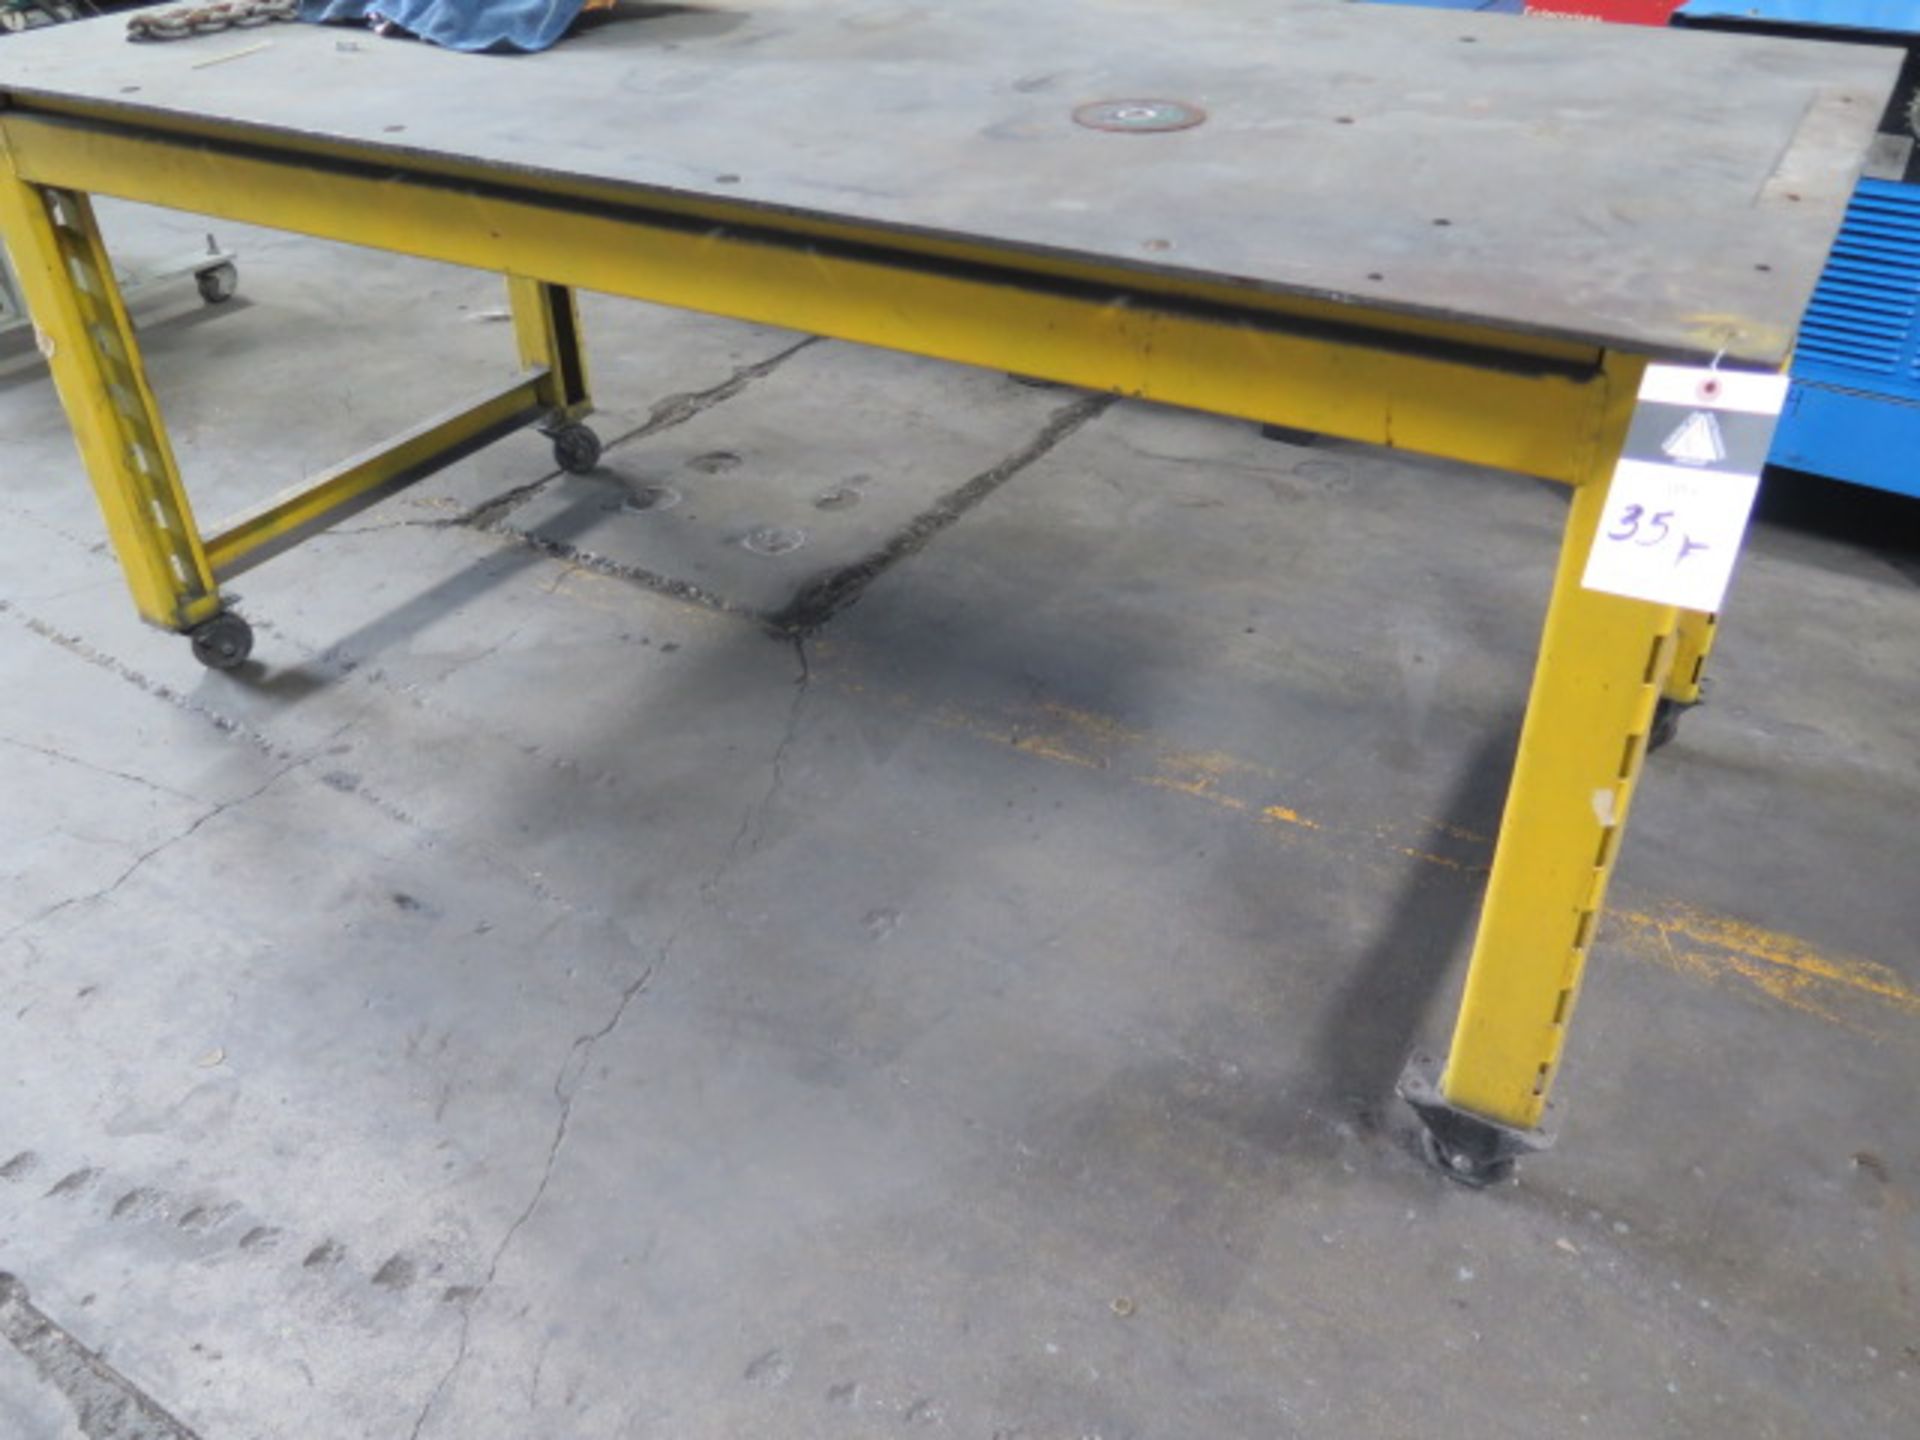 Steel Welding Table (SOLD AS-IS - NO WARRANTY)